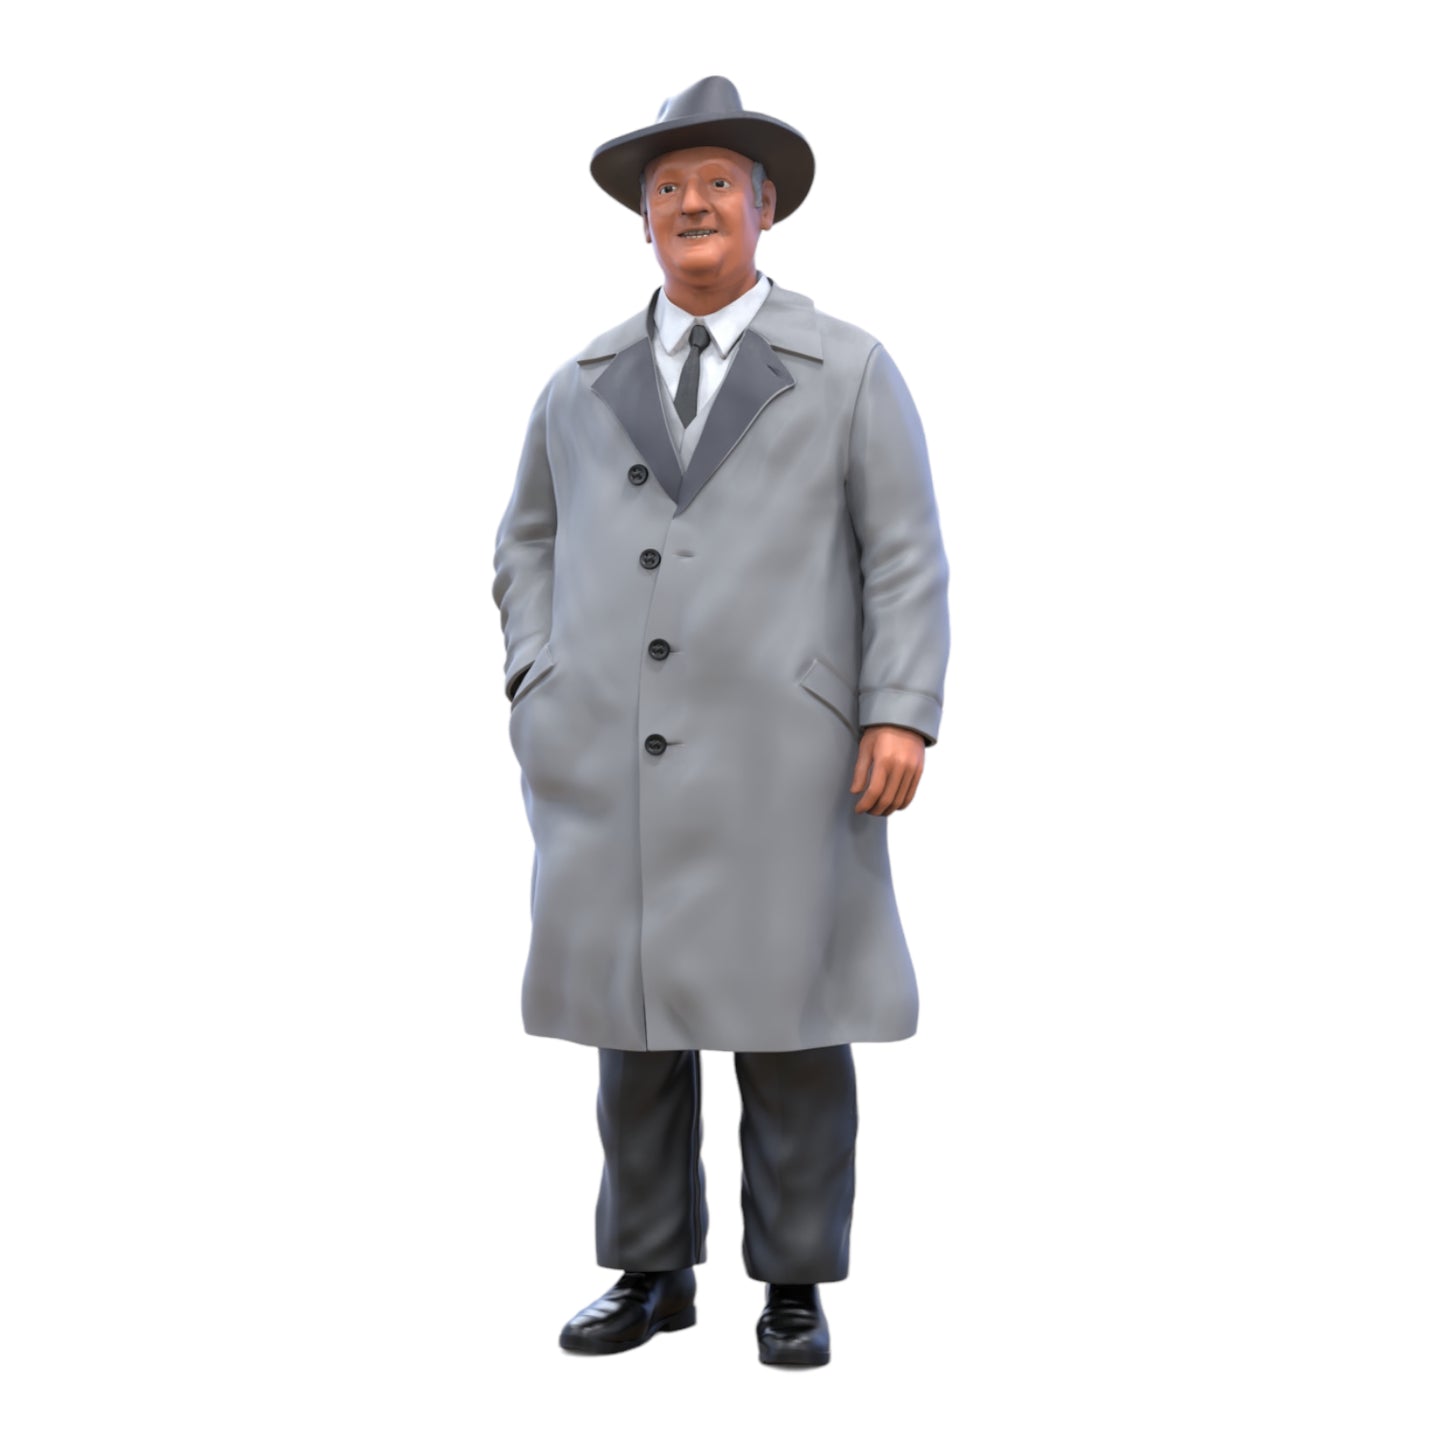 Produktfoto Diorama und Modellbau Miniatur Figur: Alter Mann im Mantel - 20er Jahre Ganove